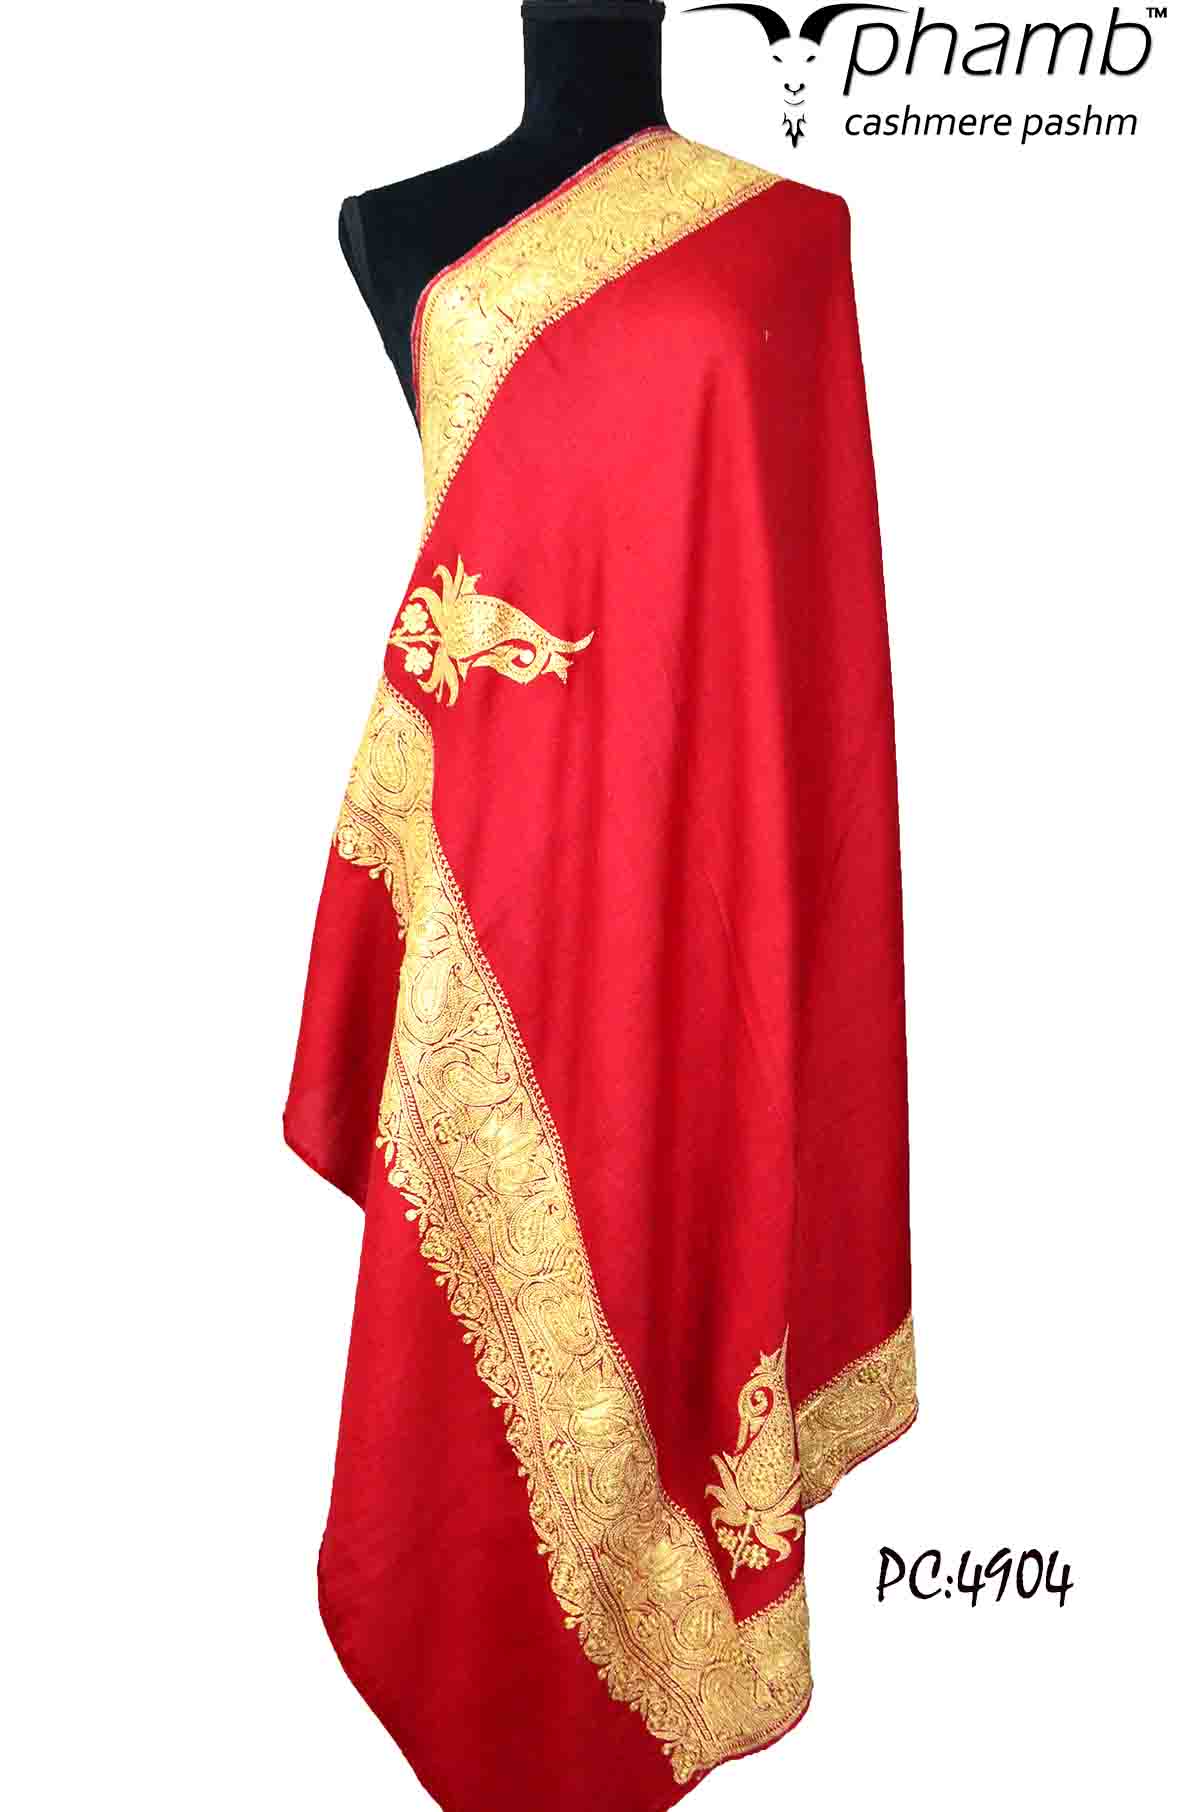 Golden tilla shawl - 4904